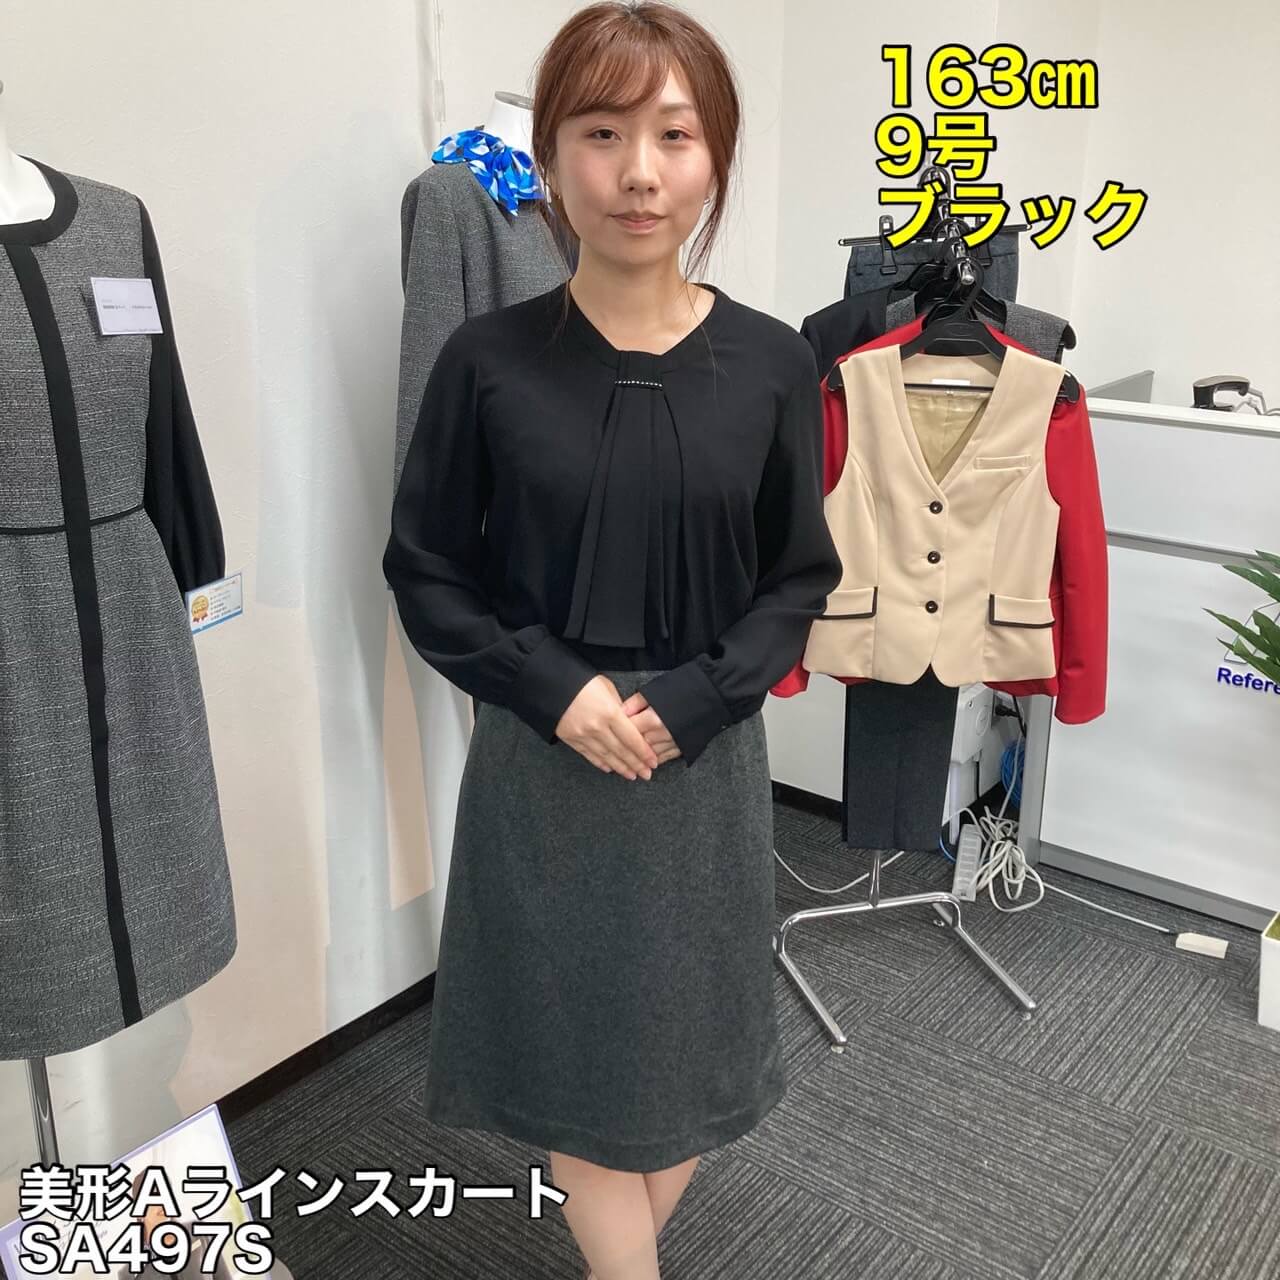 神馬本店 美形Aラインスカート SA497S